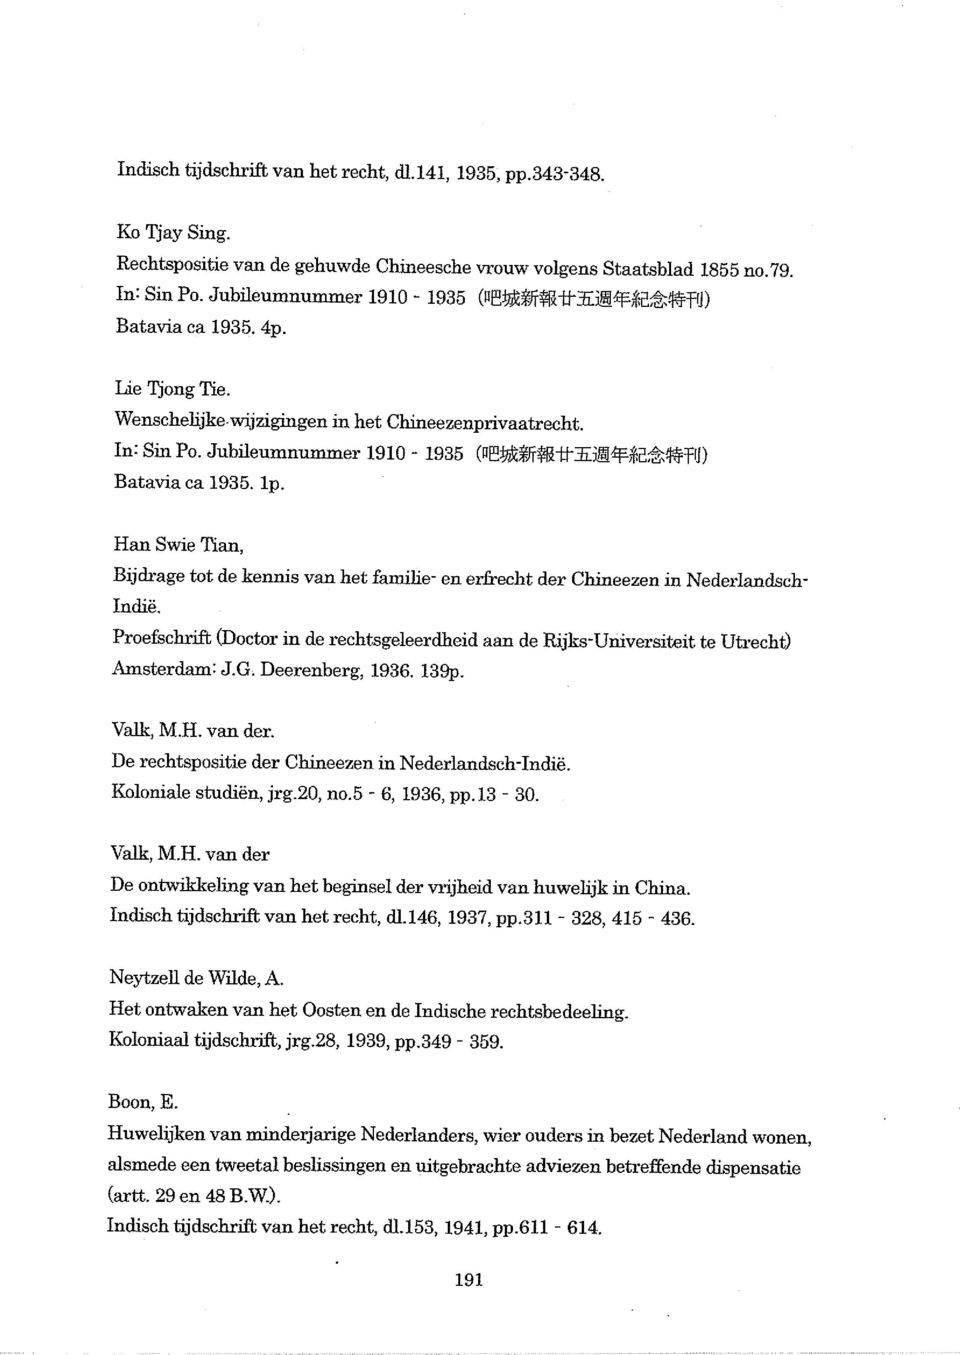 Han Swie Tian, Bijdrage tot de kennis van het familie- en erfrecht der Chineezen in Nederlandsch Indie. Proefschrift (Doctor in de rechtsgeleerdheid aan de Rijks-Universiteit te Utrecht) Amsterdam: J.